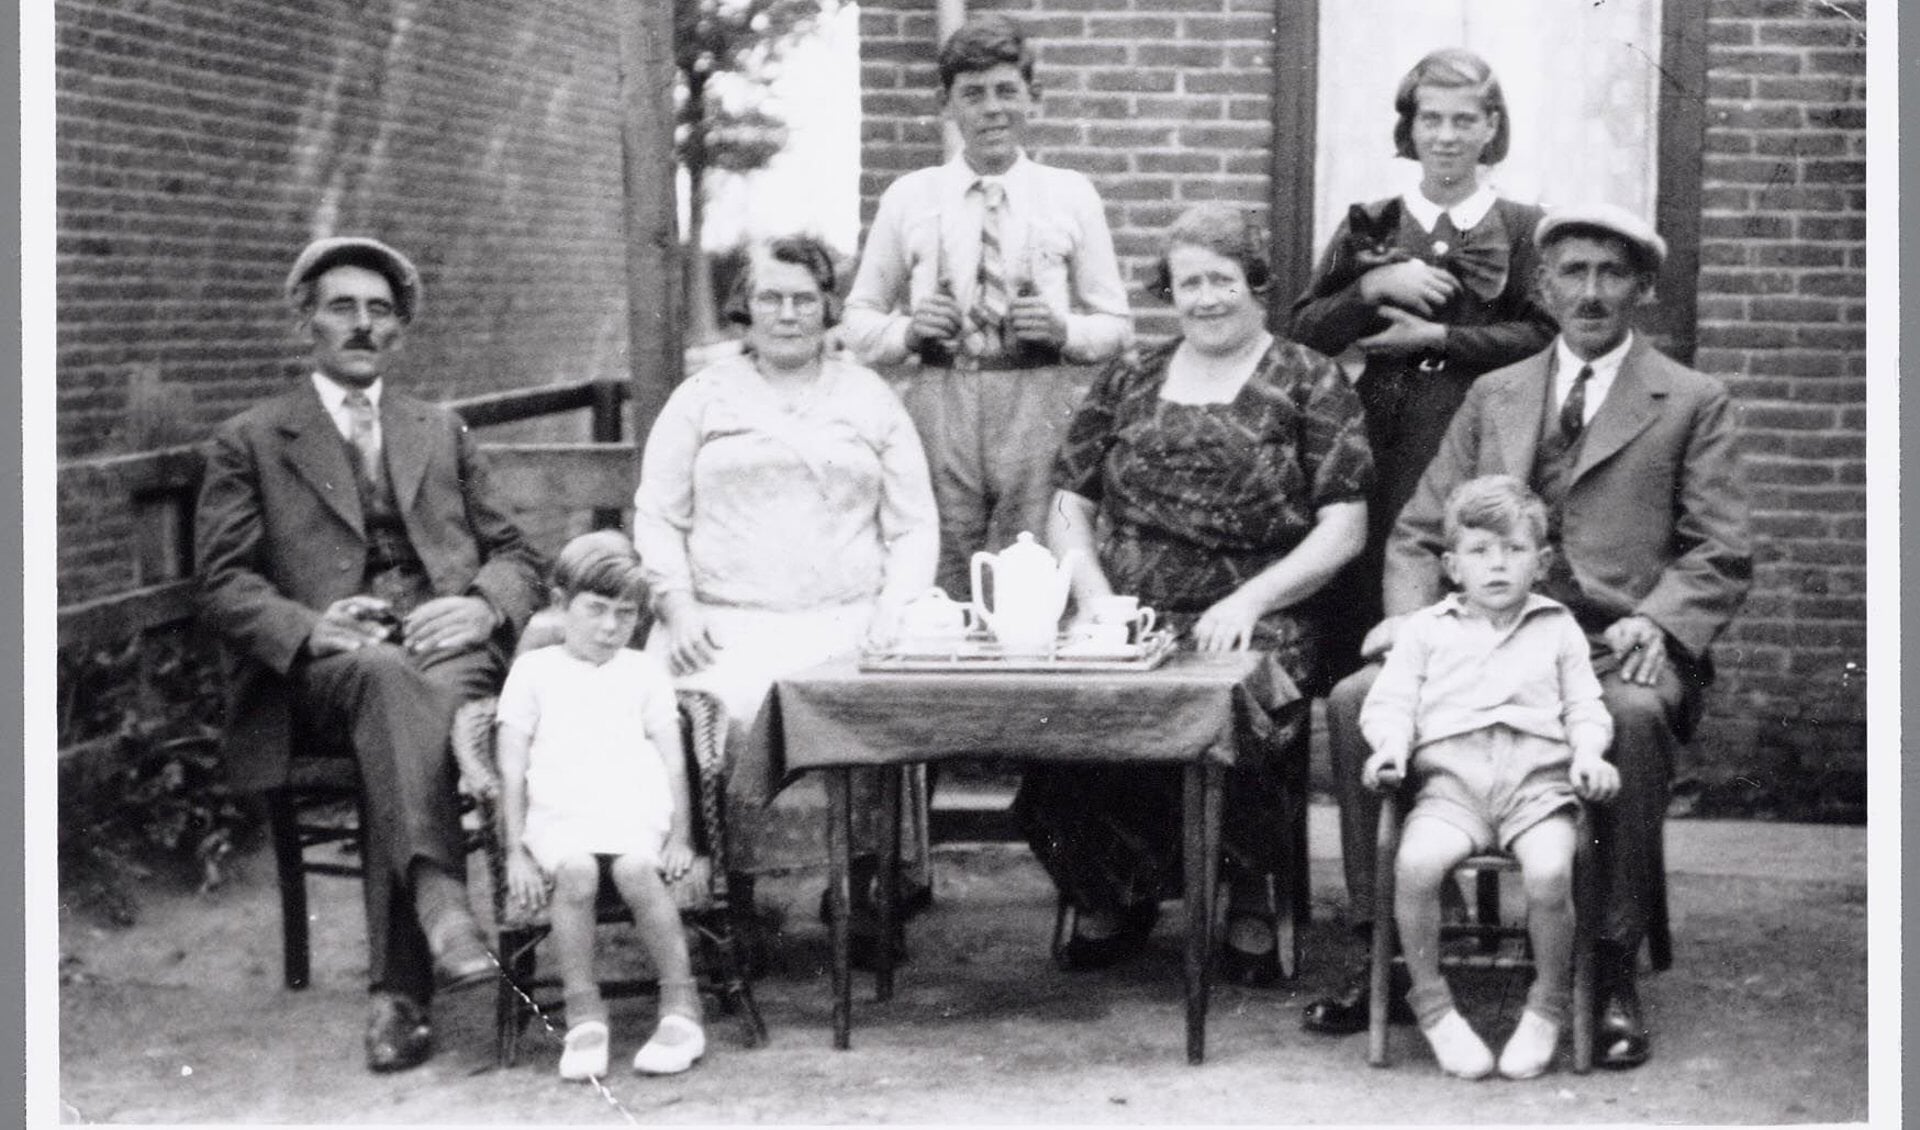 een foto met voorouders uit de Beeldbank van het GAZ.